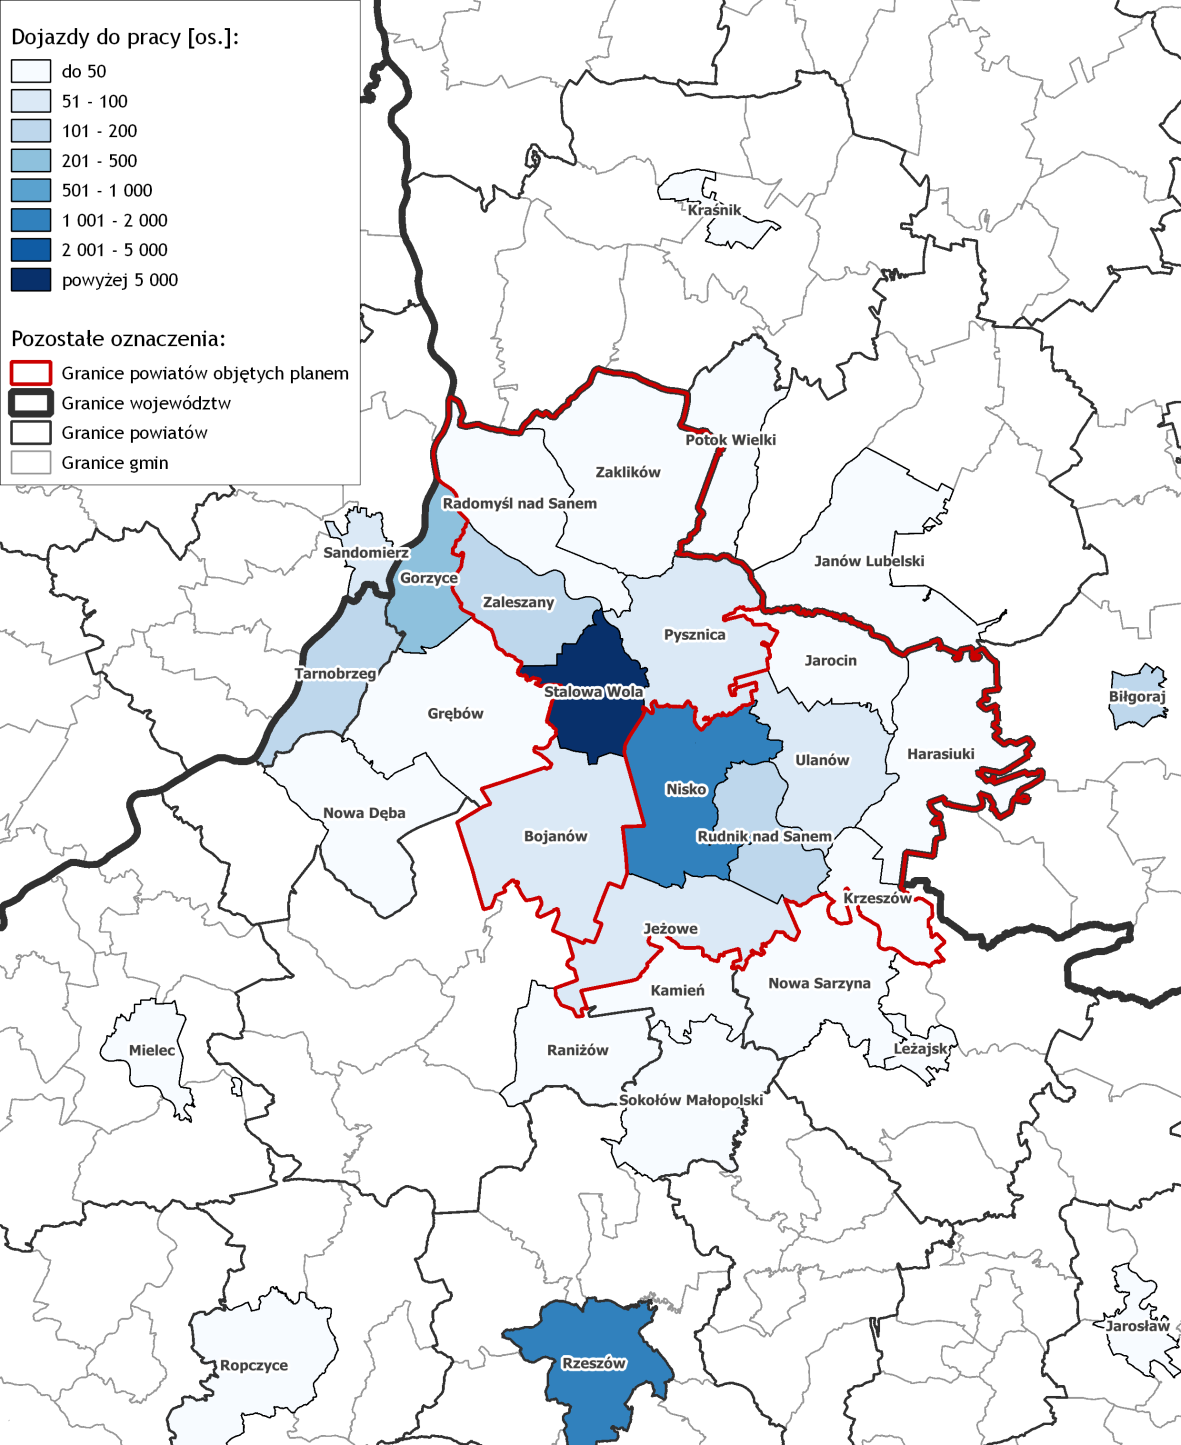 Mapa 3. Dojazdy do pracy mieszkańców gmin analizowanego obszaru Źródło: opracowanie własne na podstawie dokumentu "Dojazdy do pracy.